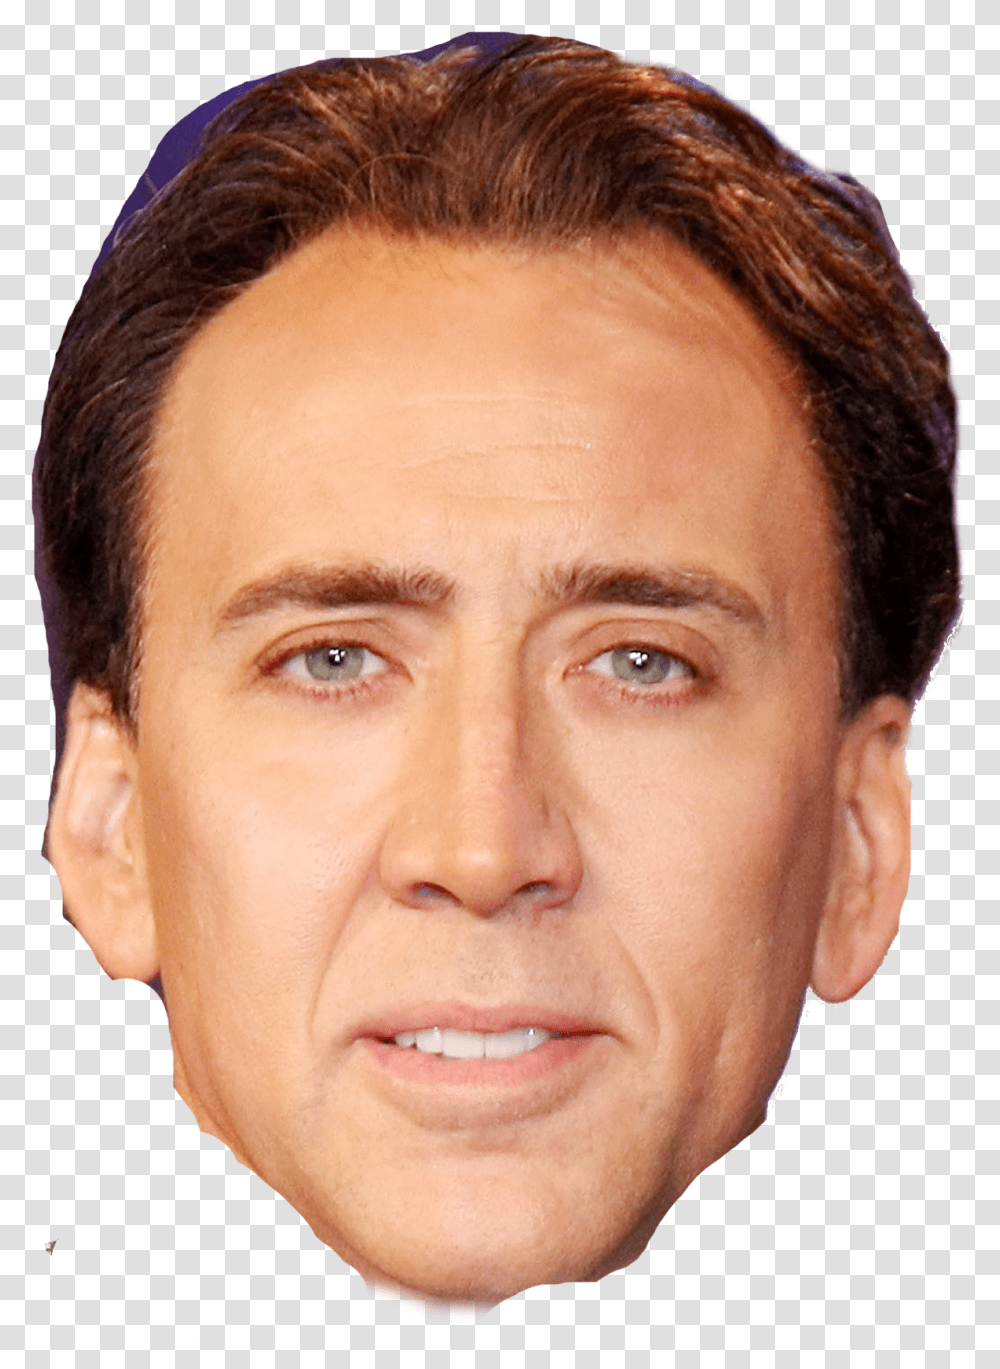 Nicolas Cage Download Nicolas Cage, Face, Person, Human, Head Transparent Png